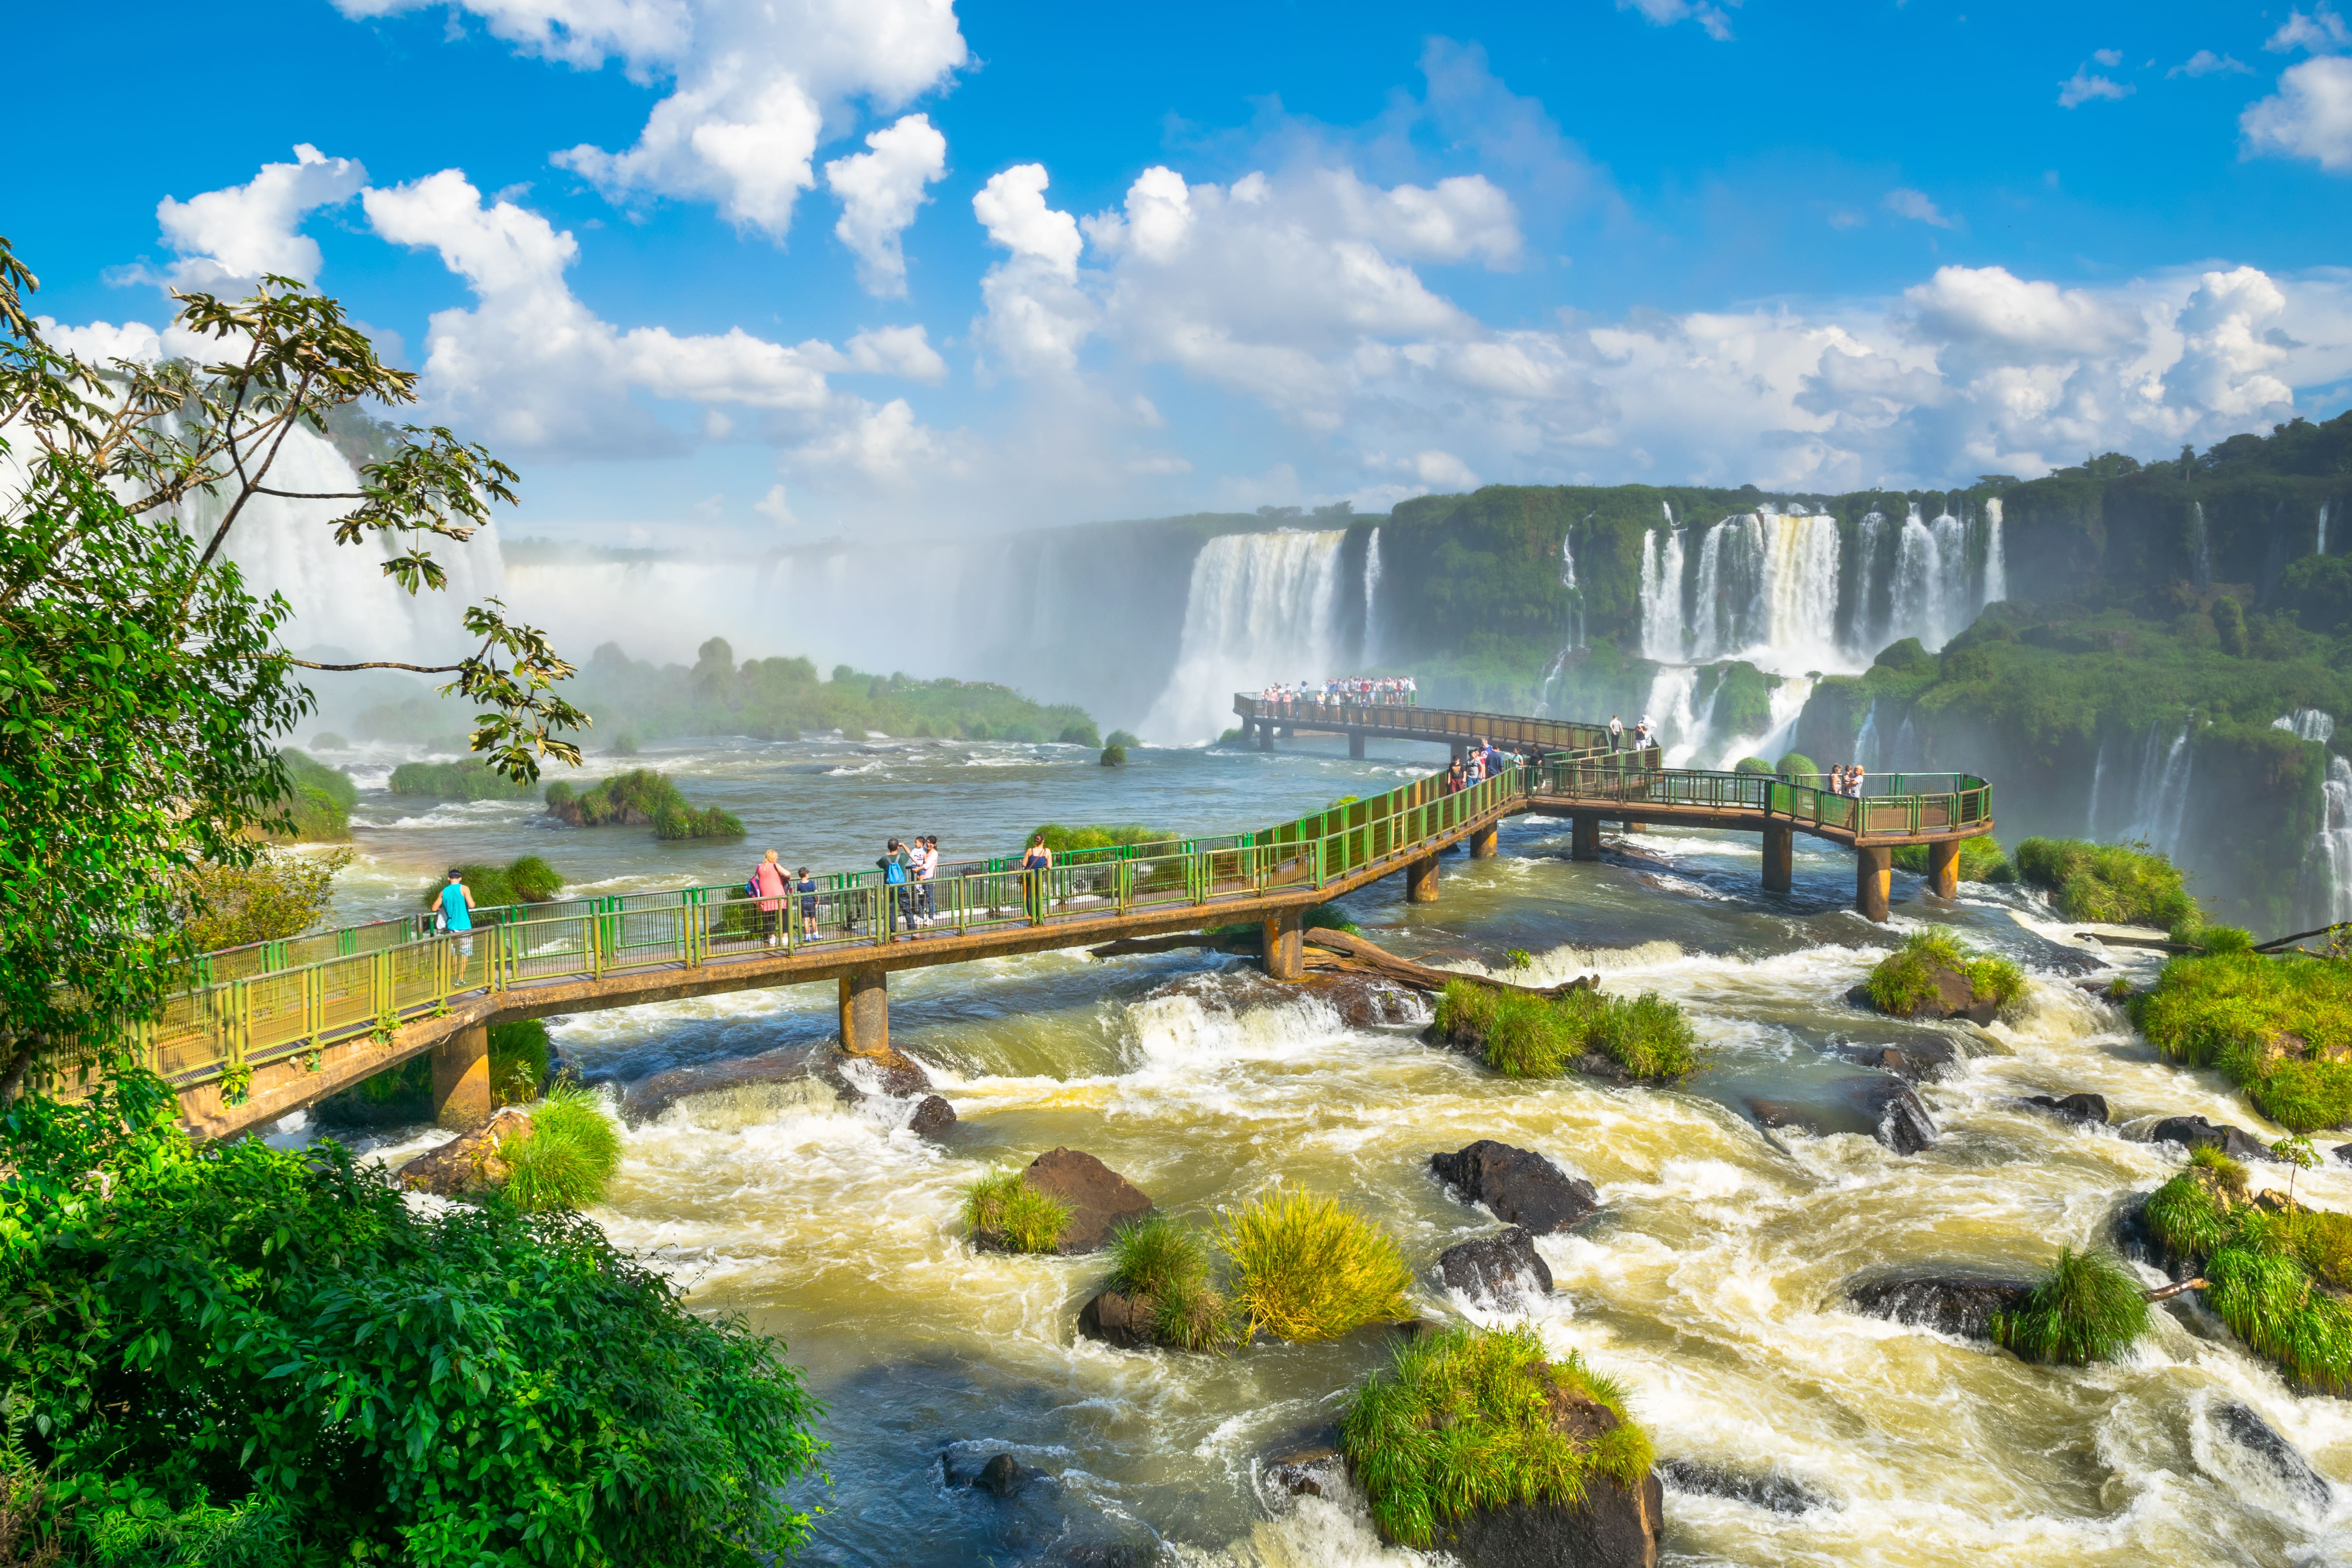 Le Brésil, la destination pour les amoureux de l'aventure !